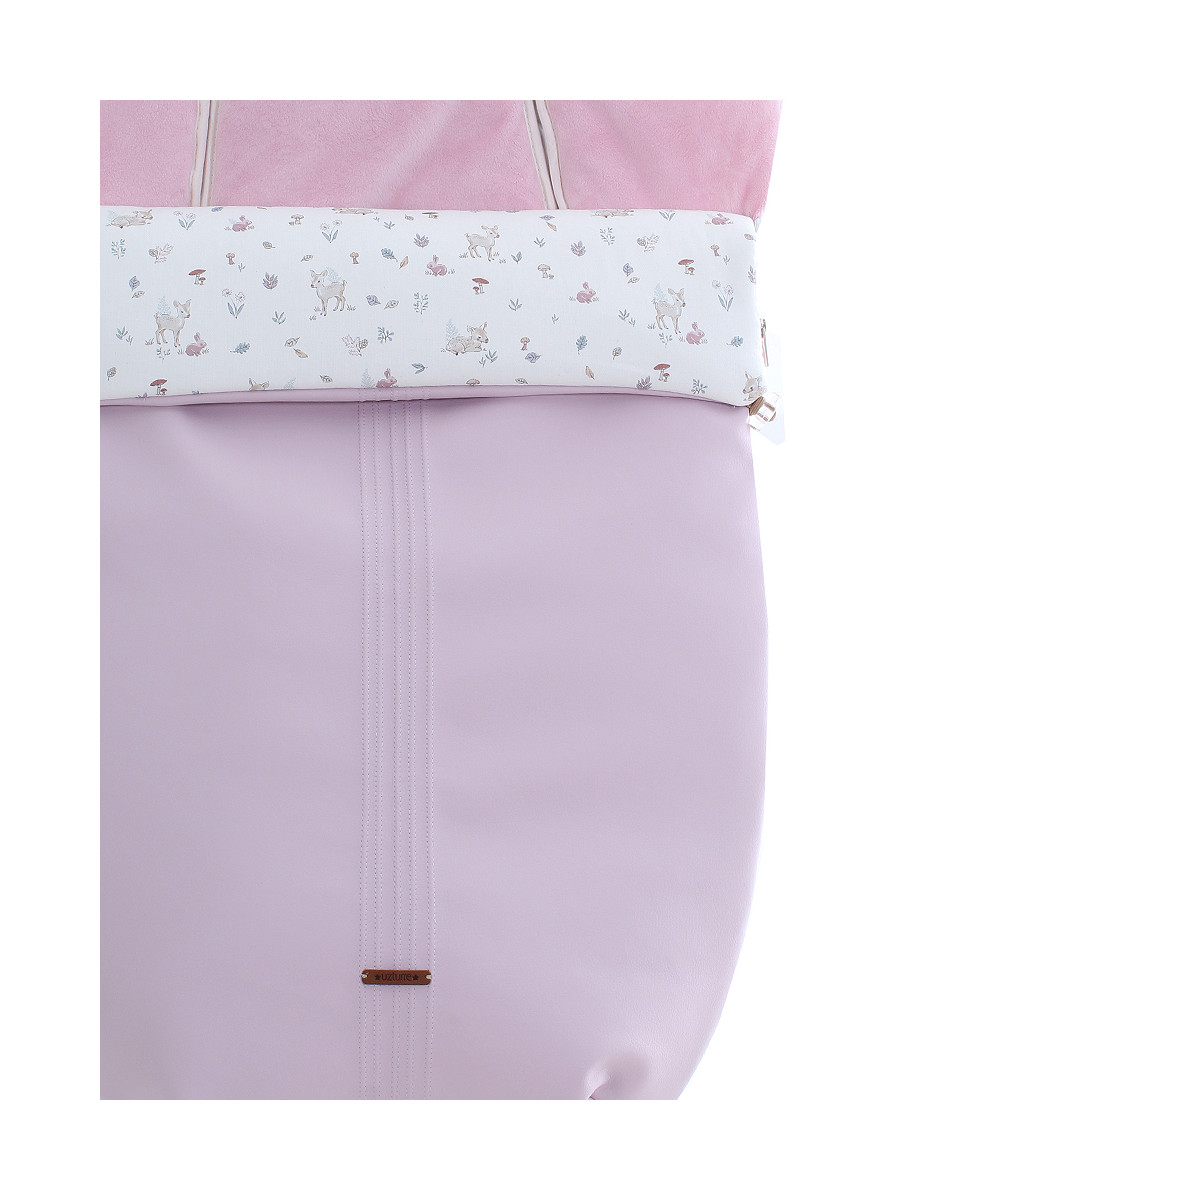 Vista más al detalle del saco de silla universal Bambi MA (interior Pelo rosa) para invierno de Uzturre.